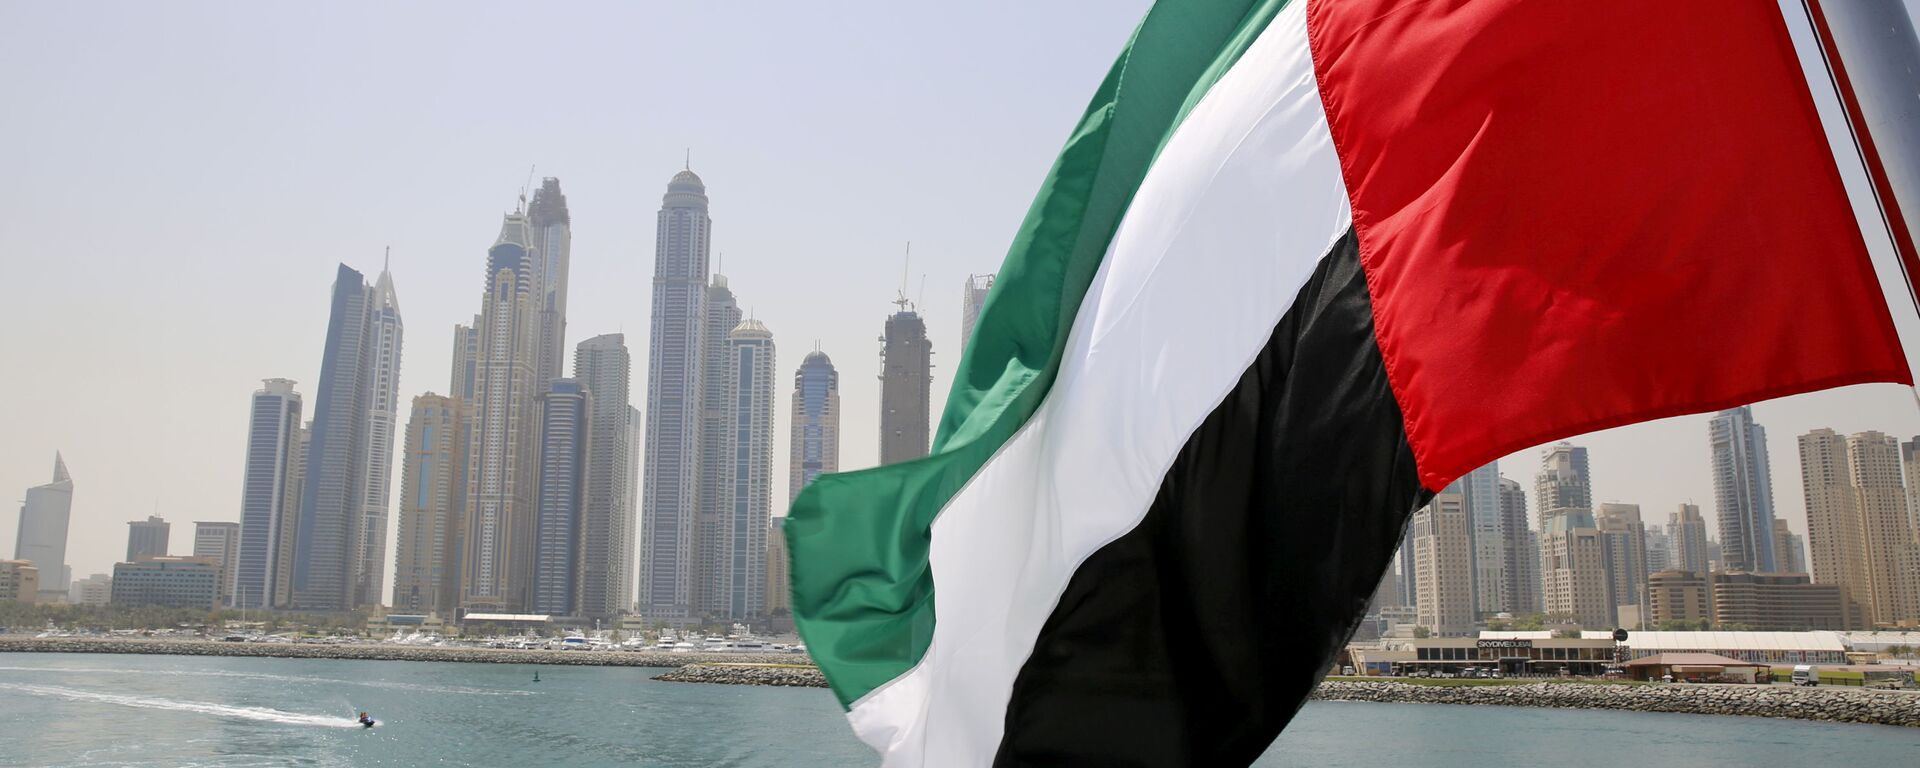 Bandeira dos Emirados Árabes Unidos hasteada em navio em Dubai Marina, Dubai, Emirados Árabes Unidos, 22 de maio de 2015 - Sputnik Brasil, 1920, 12.07.2021